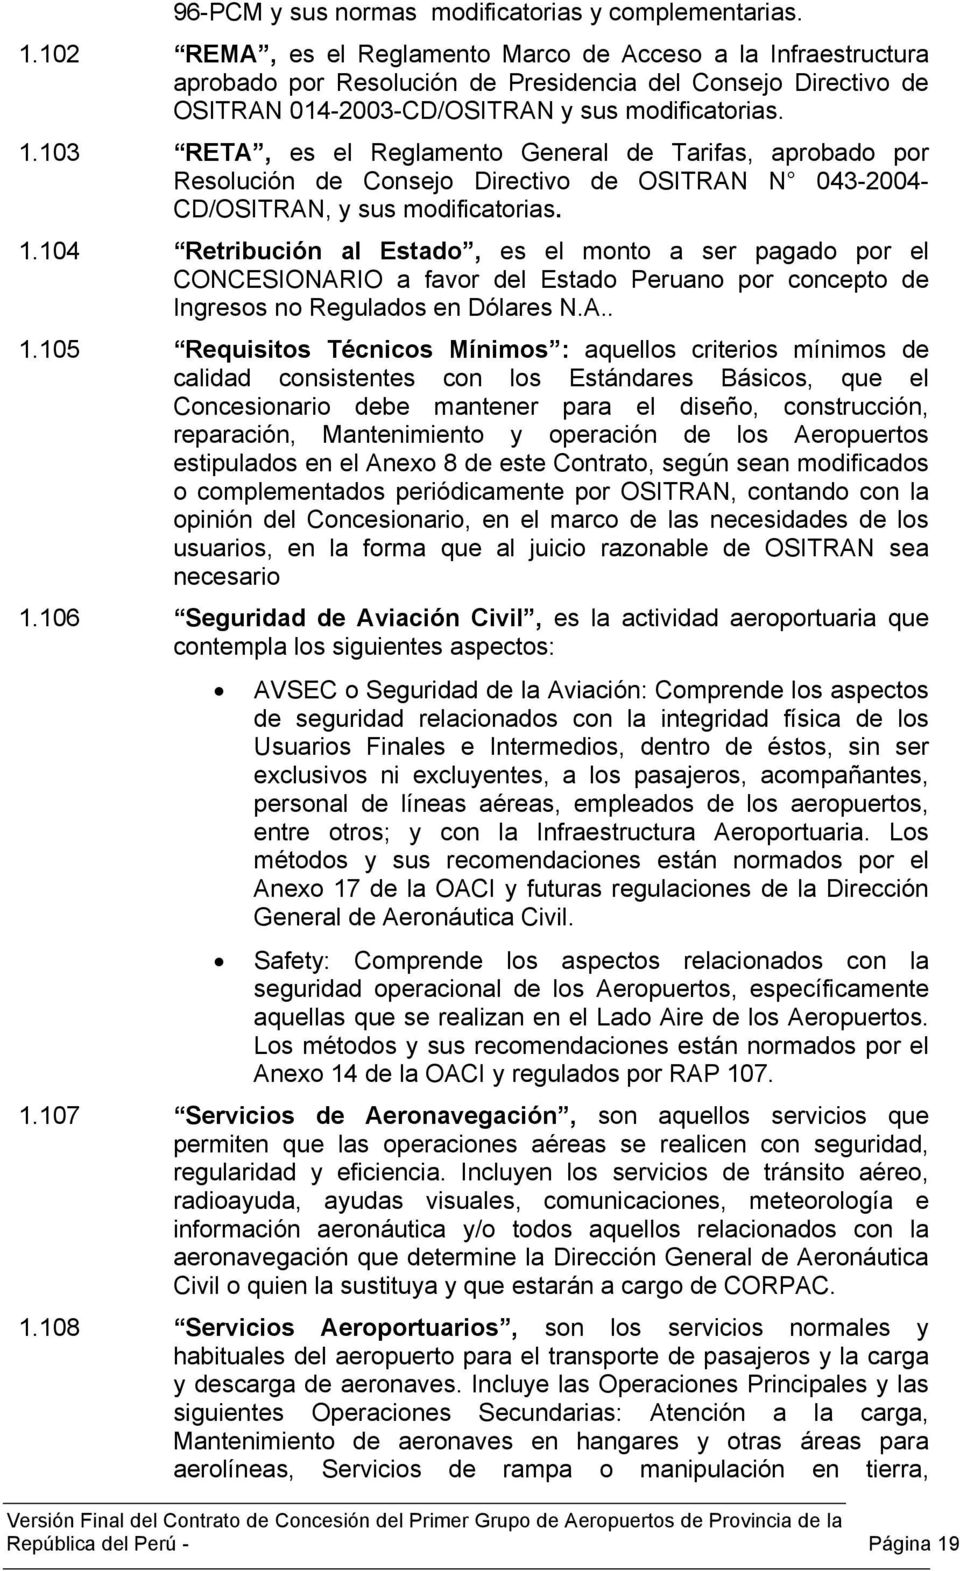 103 RETA, es el Reglamento General de Tarifas, aprobado por Resolución de Consejo Directivo de OSITRAN N 043-2004- CD/OSITRAN, y sus modificatorias. 1.